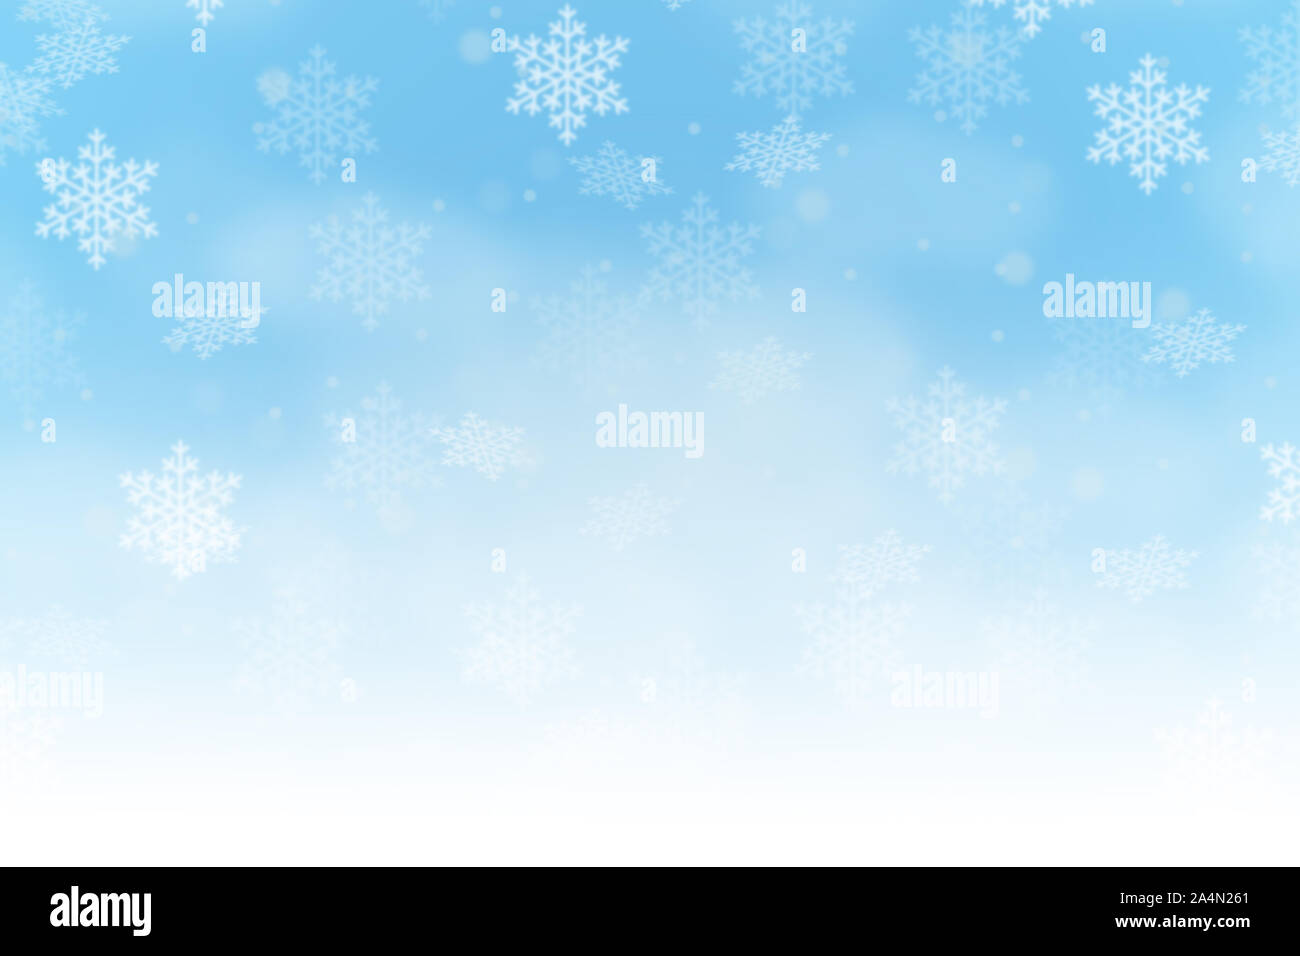 Weihnachten Hintergrund Hintergründe Kartenbild winter schnee Schneeflocken schneit Space copyspace kopieren Stockfoto